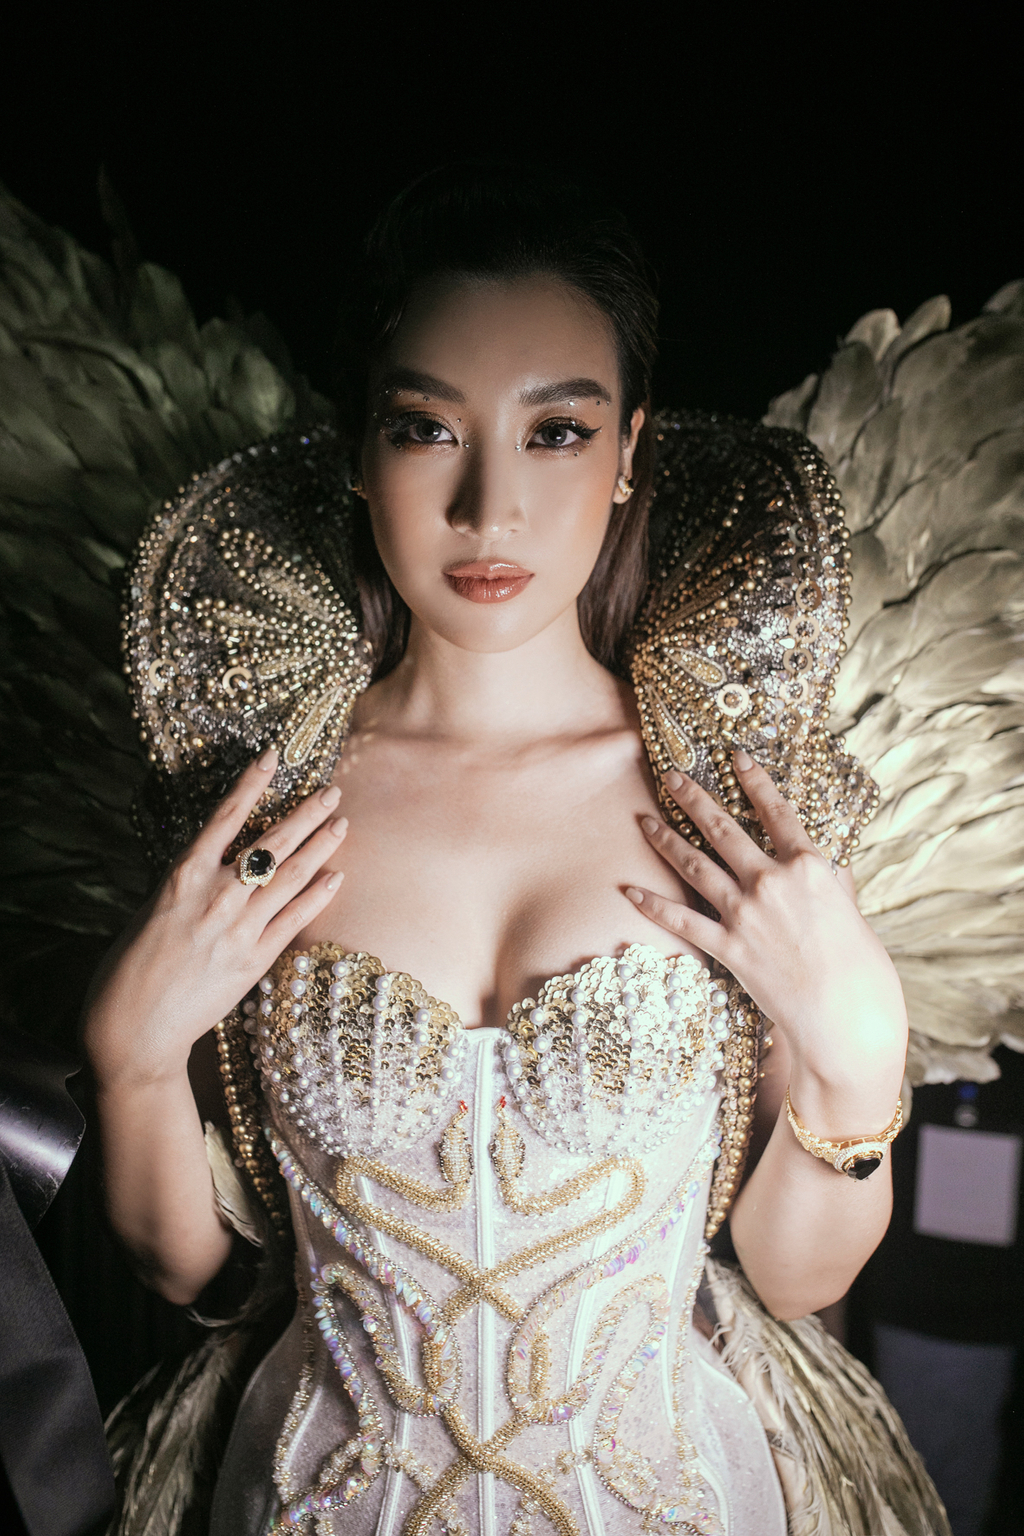 Tại show diễn của NTK Đỗ Long, HH Đỗ Mỹ Linh xuất hiện với hình ảnh hoàn toàn khác biệt so với phong cách thường ngày của cô.